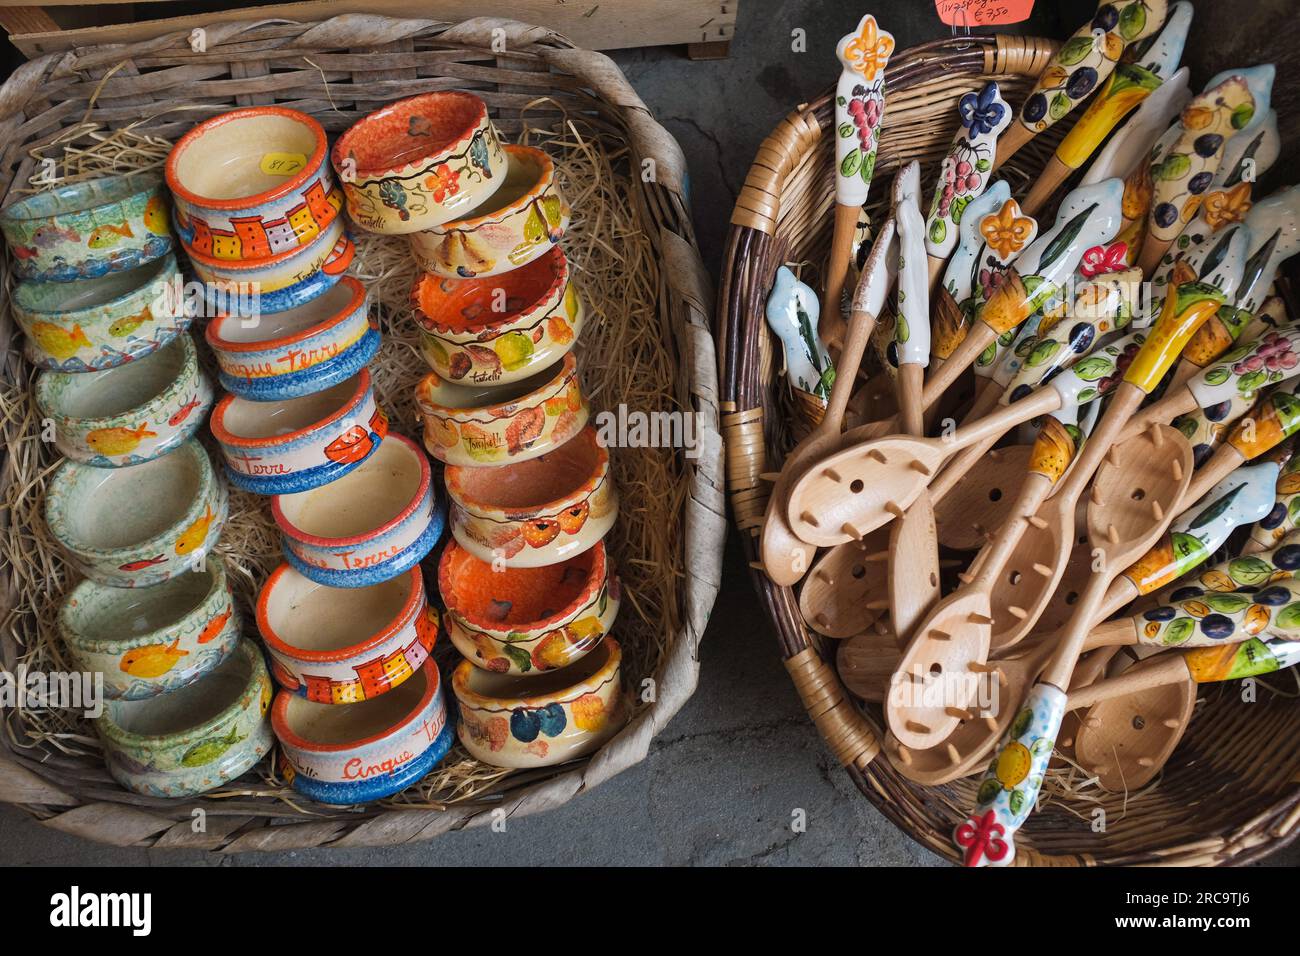 Cinque Terre, Italia - ciotole in ceramica colorata e cucchiai in legno su cesti. Souvenir locali venduti a Riomaggiore, una cittadina di mare sulla Riviera Italiana. Foto Stock